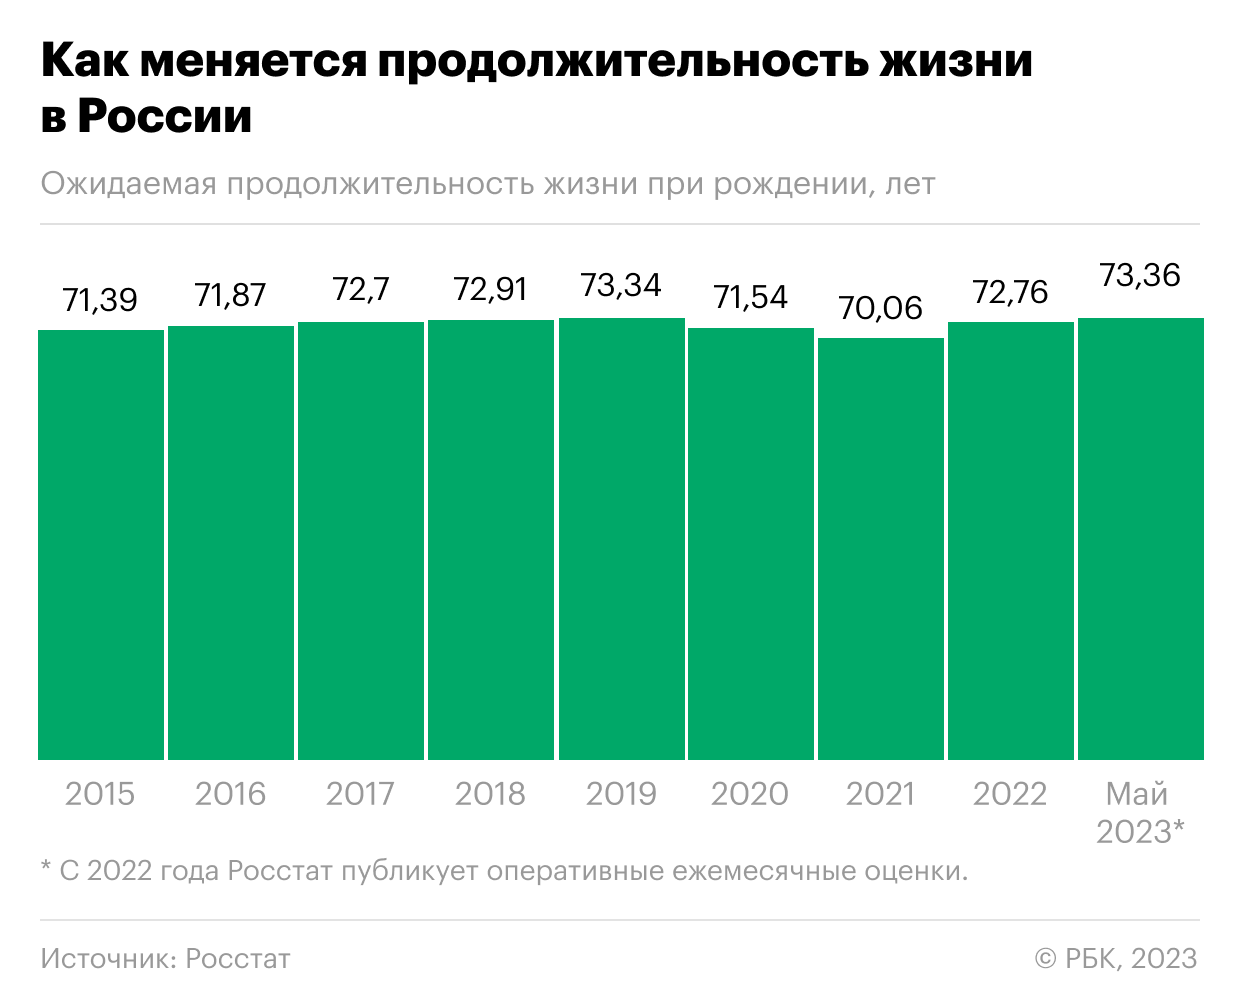 Почему продолжительность жизни в России вернулась к доковидному уровню